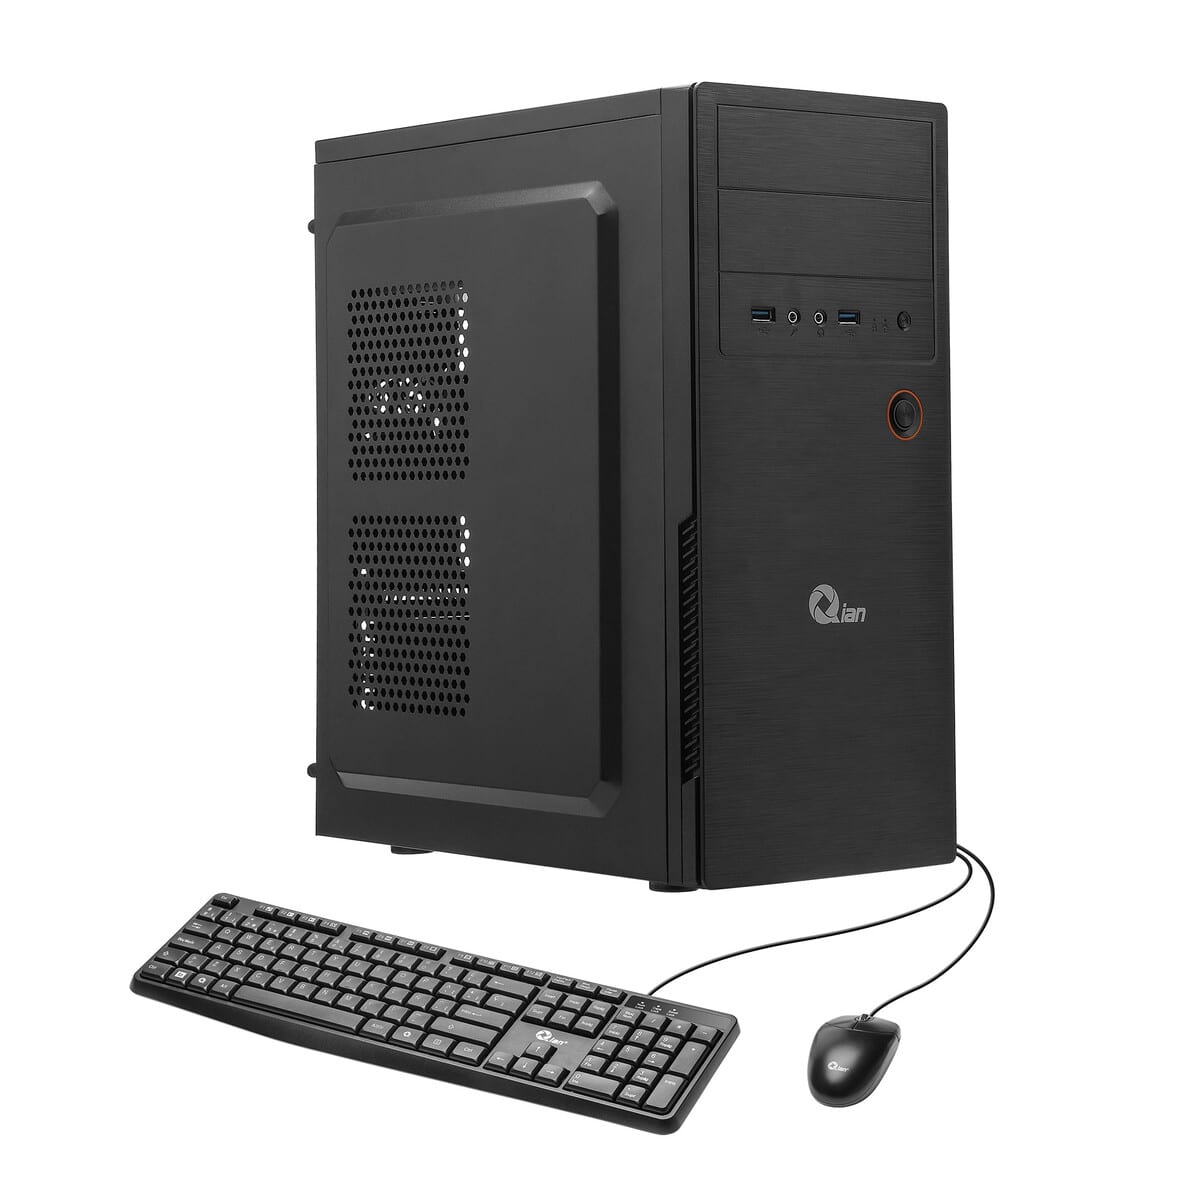 Desktop Qian Qpi Opci01 01 Core I5  16Gb Ddr4  480 Ssd  H610M E  T M - QPI-OPCI01-01